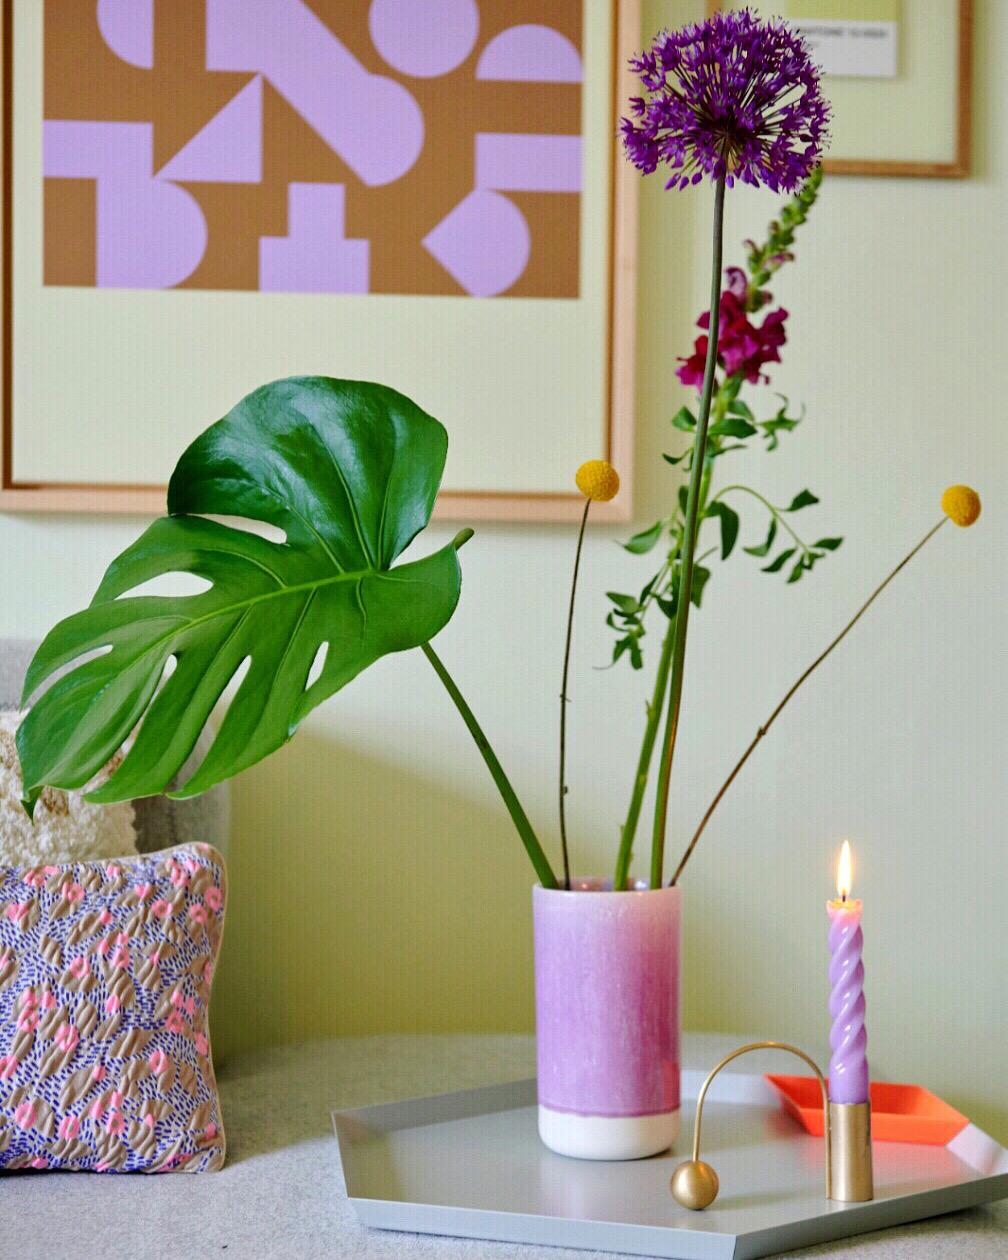 Kleines Stillleben mit Blumen in unserem Wohnzimmer 💜
#wohnzimmer #color #pastell